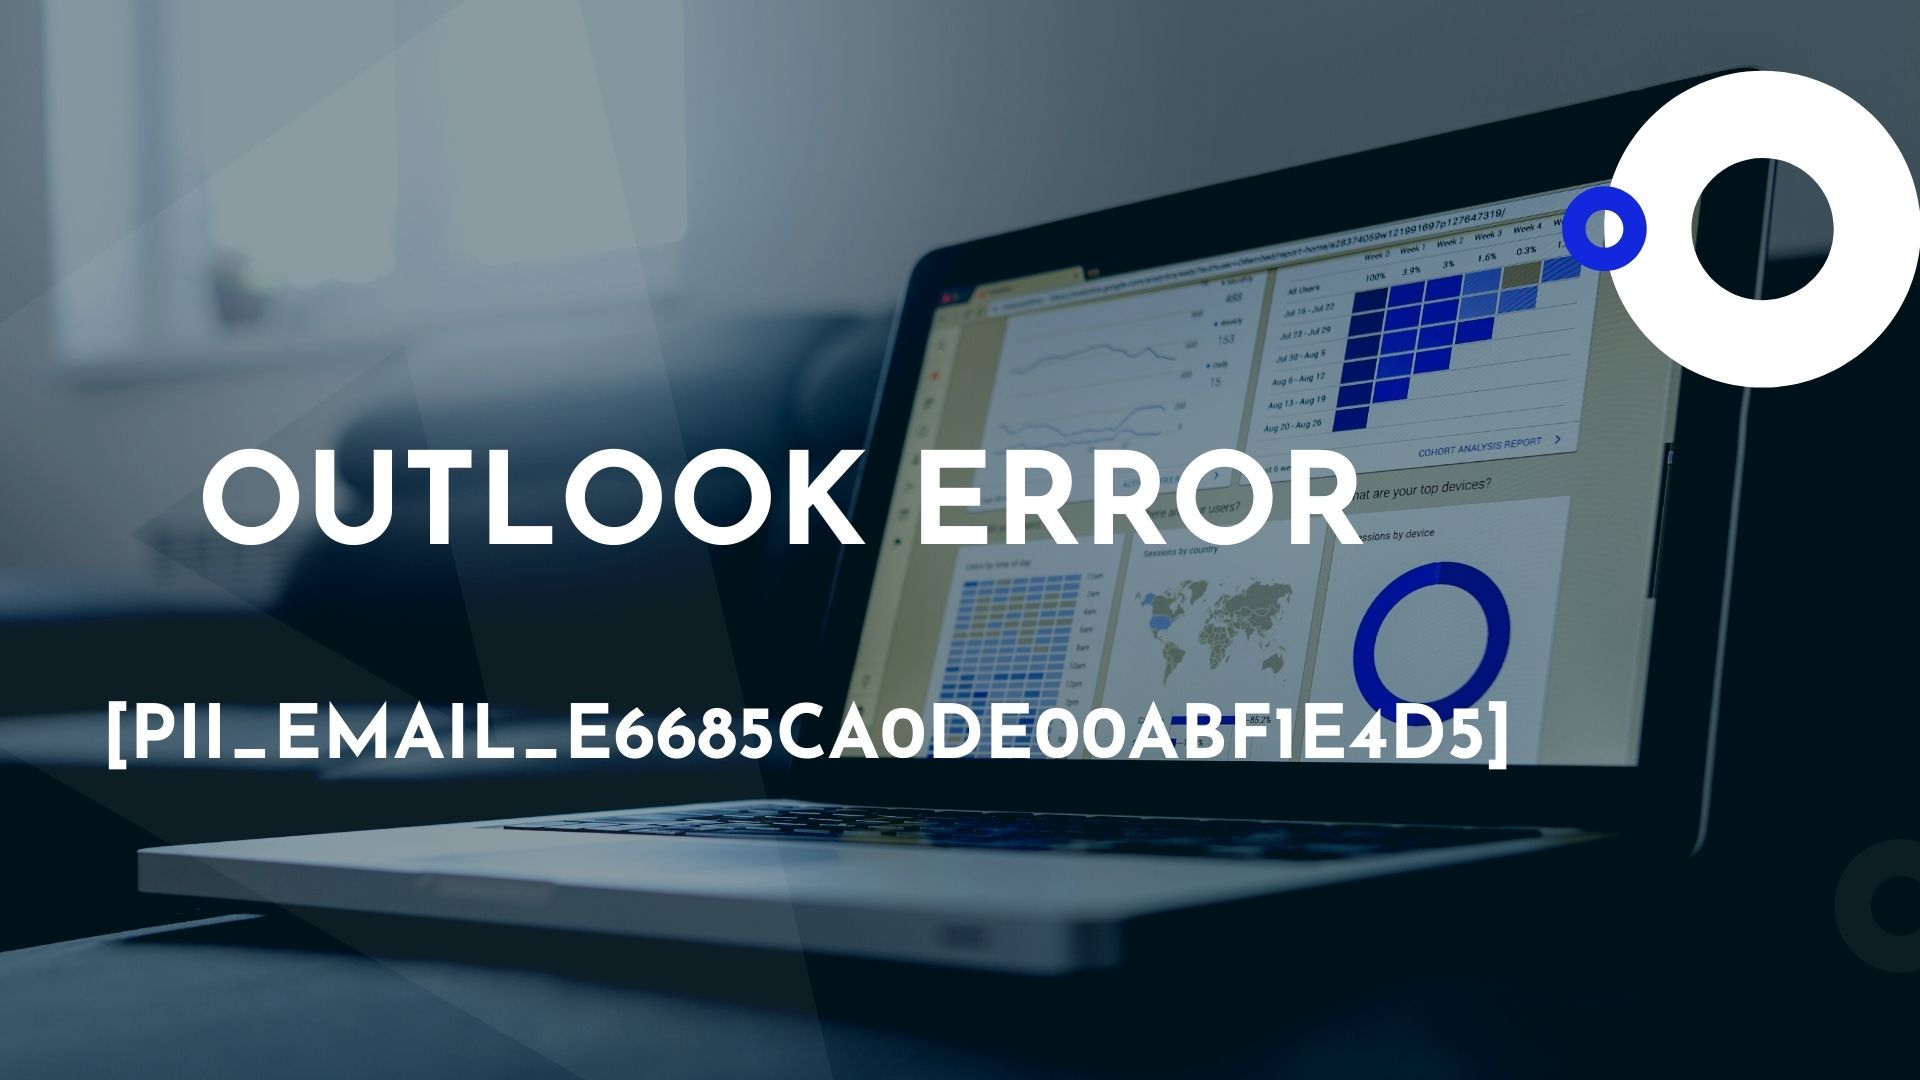 How To Fix The Error Code [pii_email_e6685ca0de00abf1e4d5] Quickly